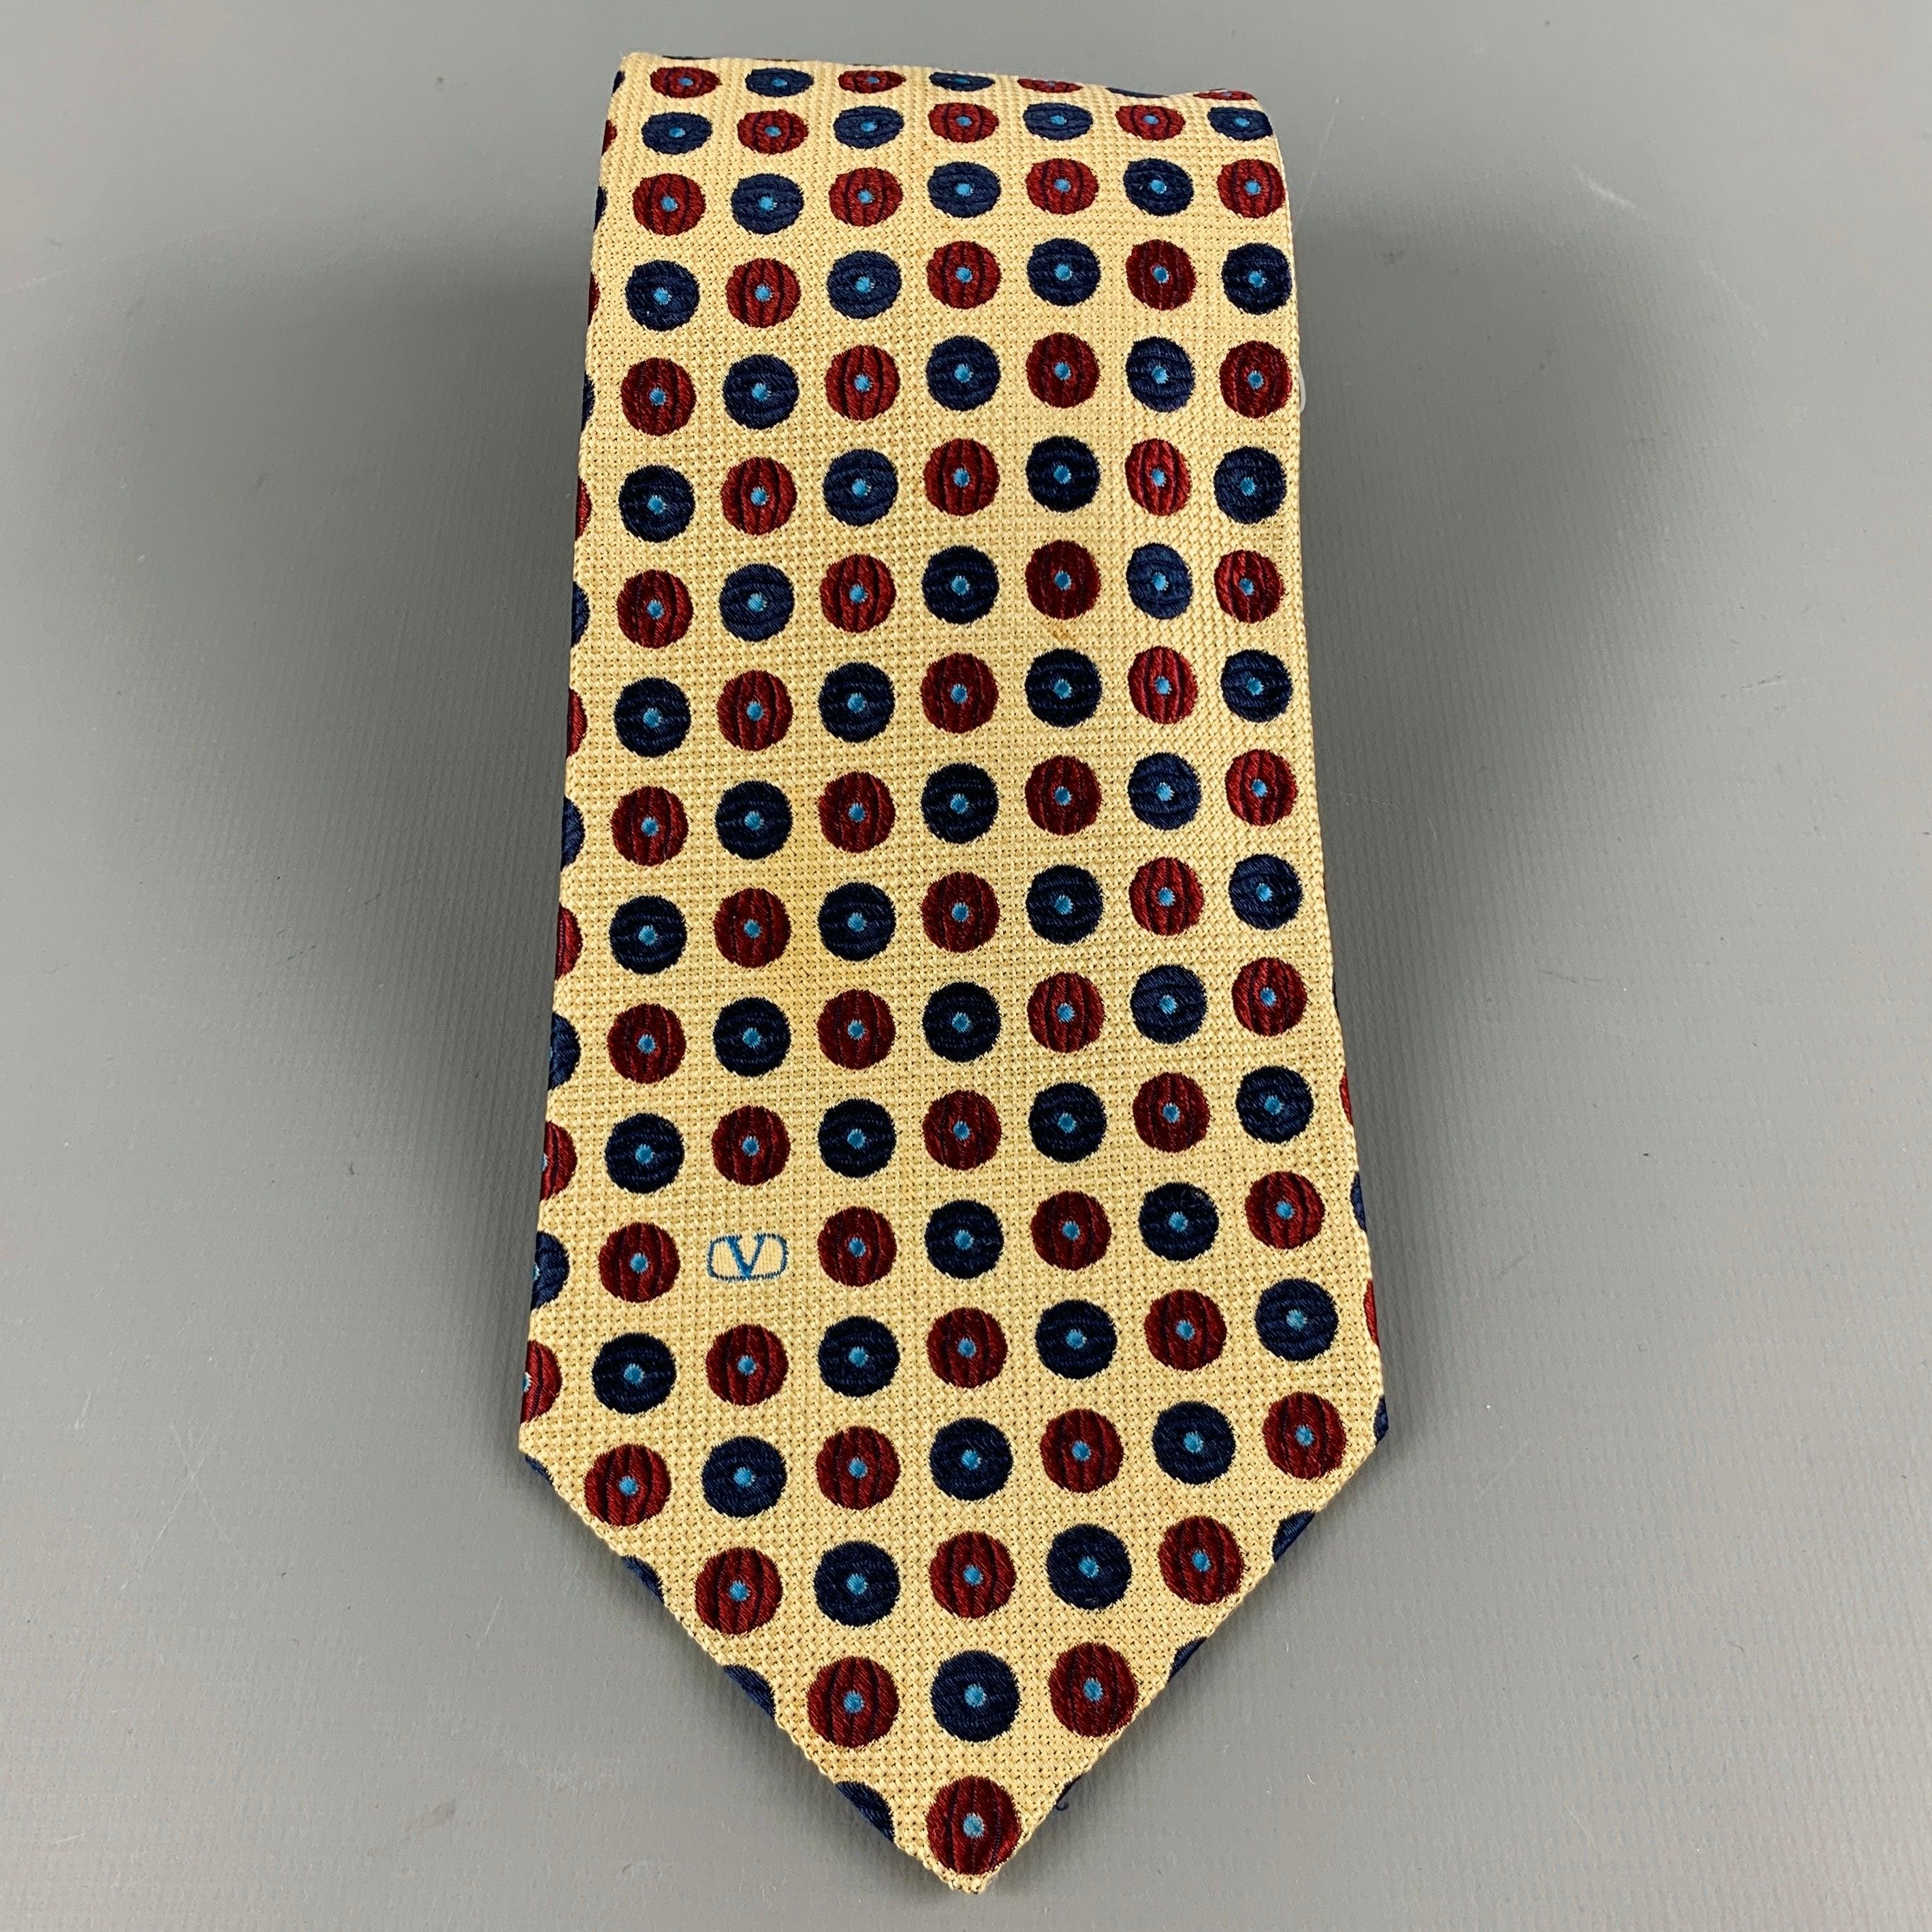 Vintage VALENTINO
Krawatte in einer
gelber Seidenstoff mit rotem und blauem Punkte-Jacquard und dem charakteristischen Valentino Monogram. Made in Italy Ausgezeichneter Pre-Owned Zustand. 

Abmessungen: 
  Breite: 3,5 Zoll Länge: 57 Zoll 
  
  
